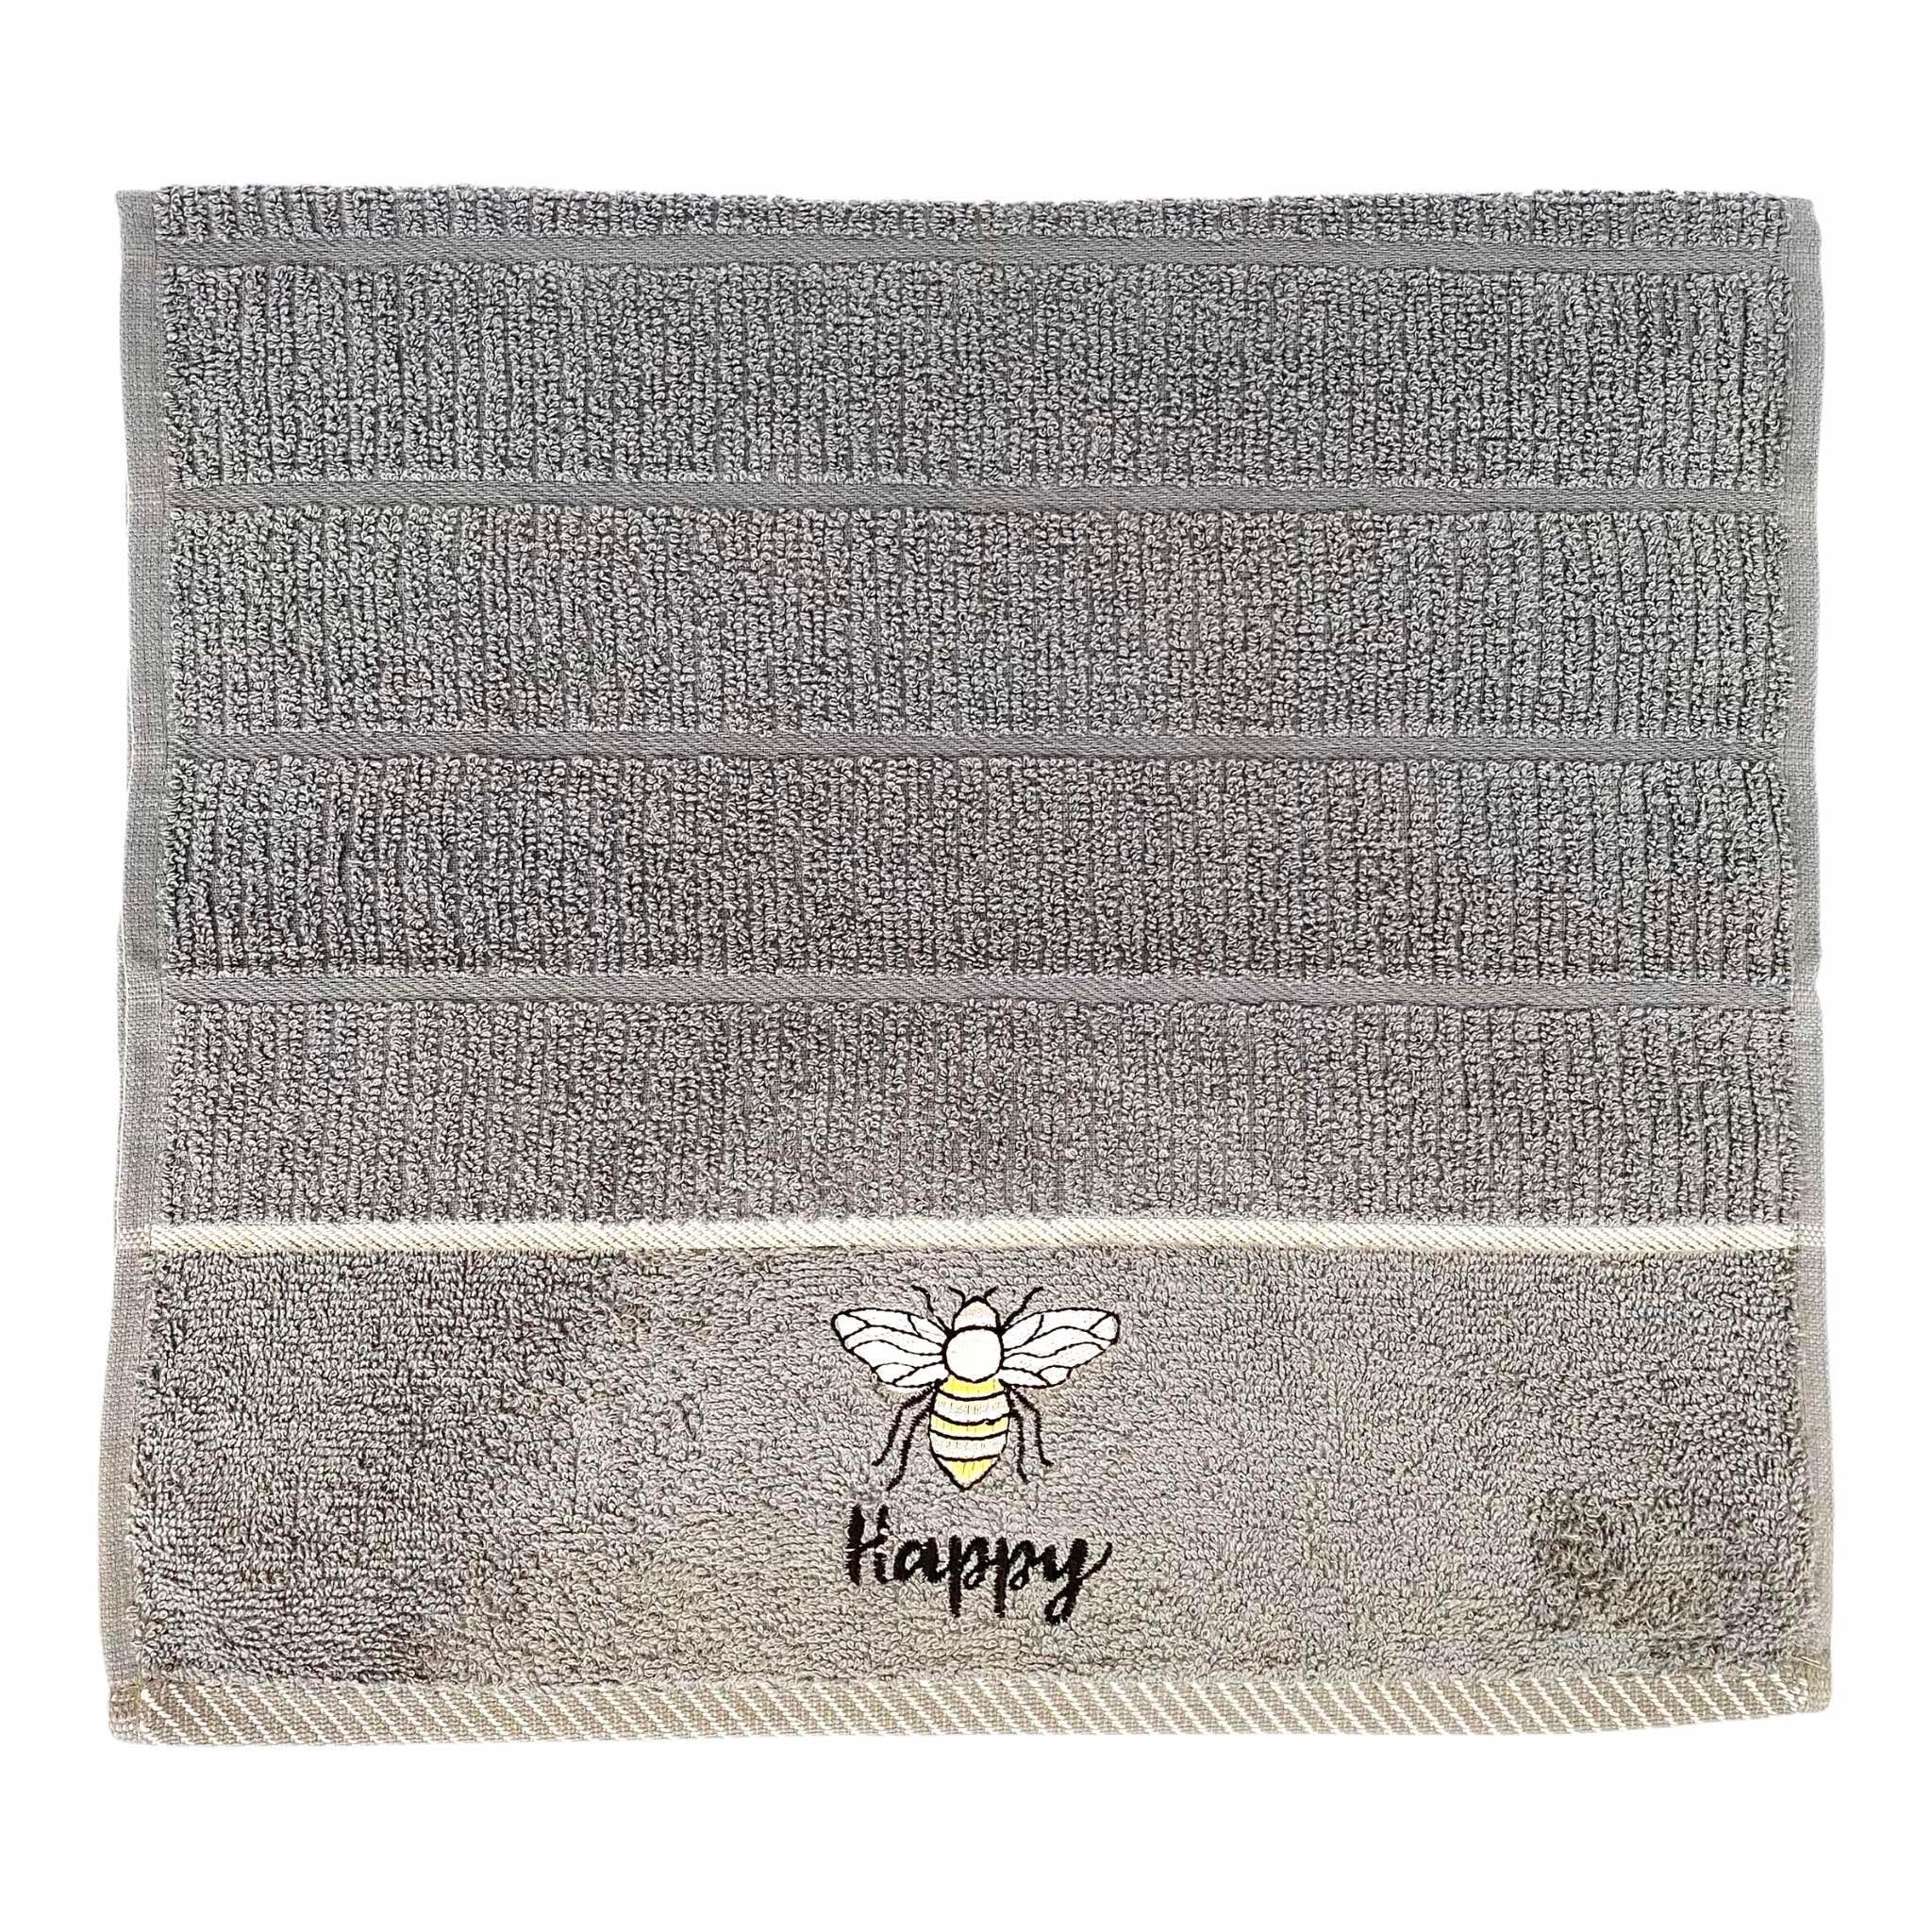 Bee Happy Kitchen Towel Grey-Williamsons Factory Shop